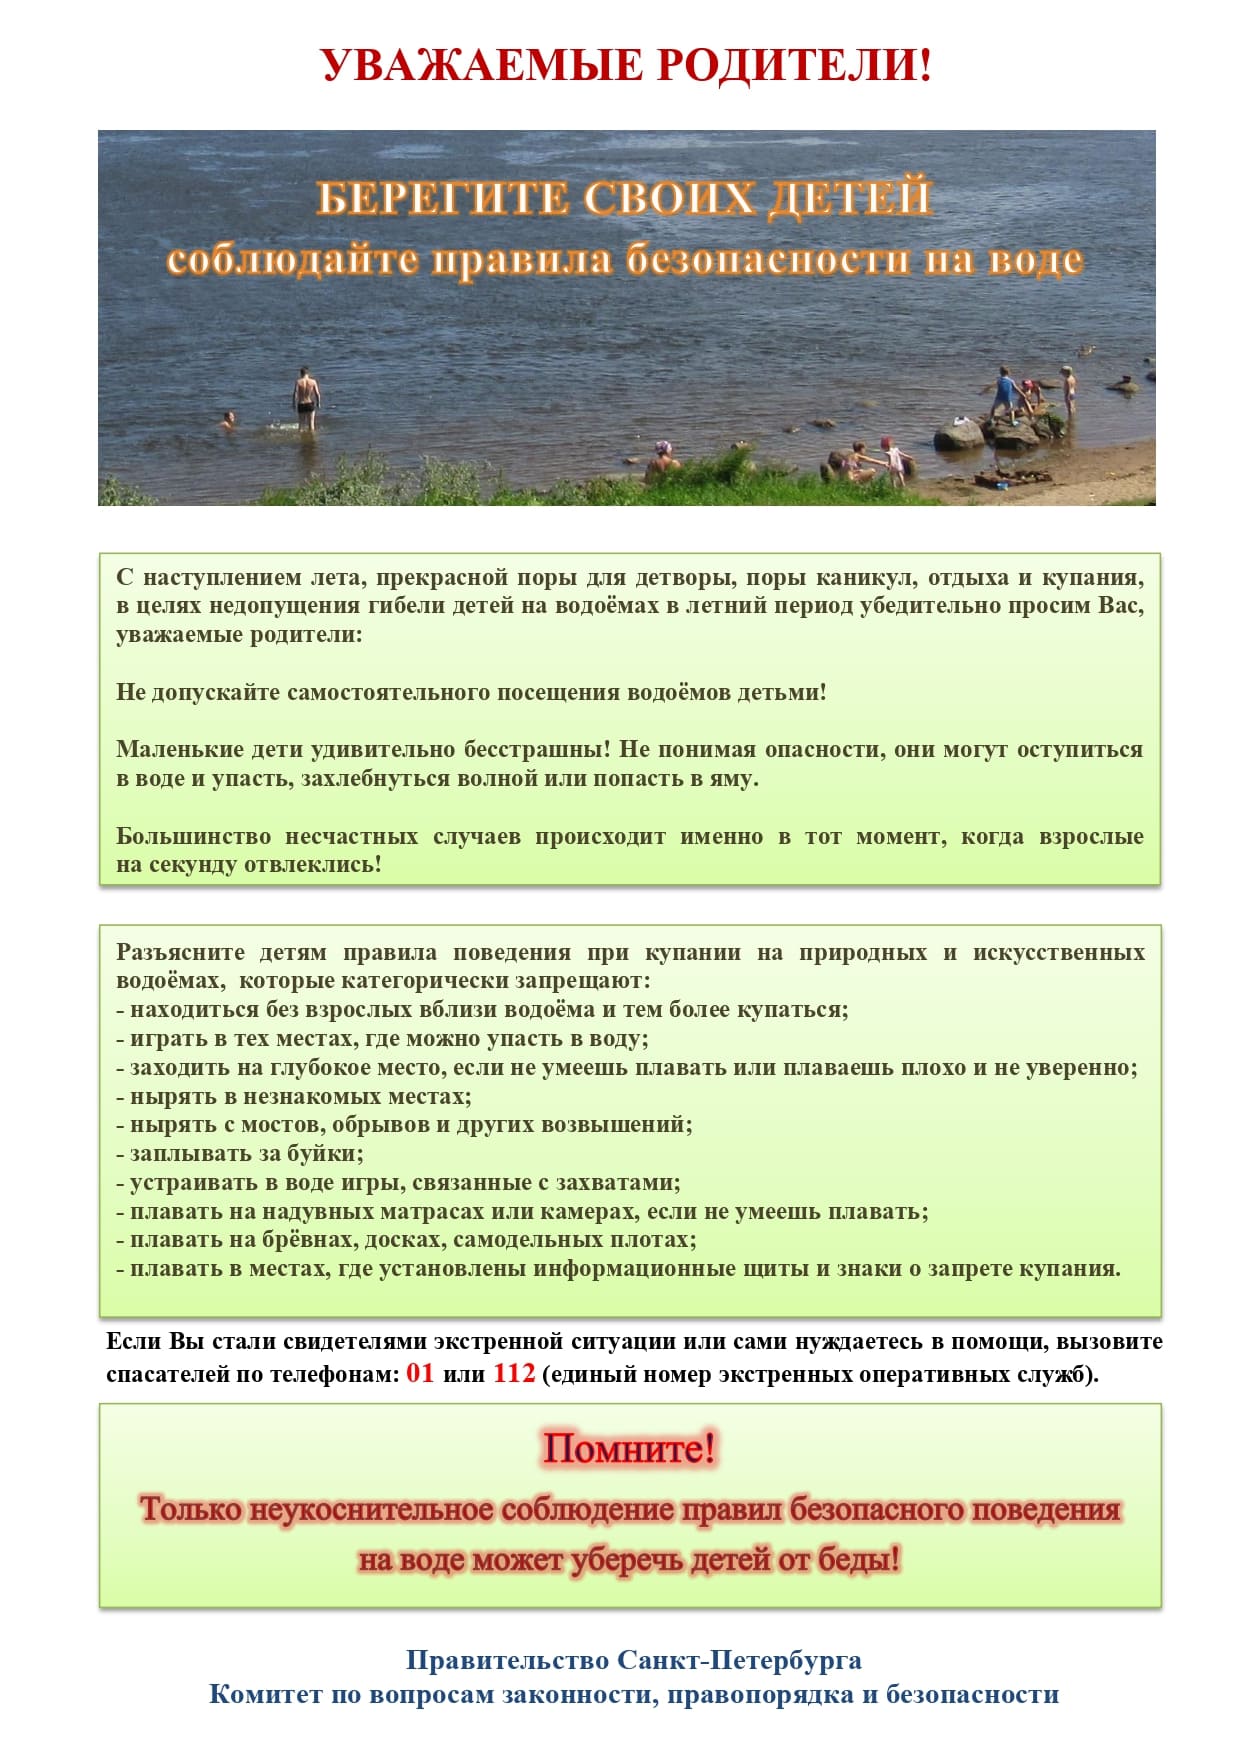 Памятка родителям по запрету купания в неотведенных местах 2021 page 0001